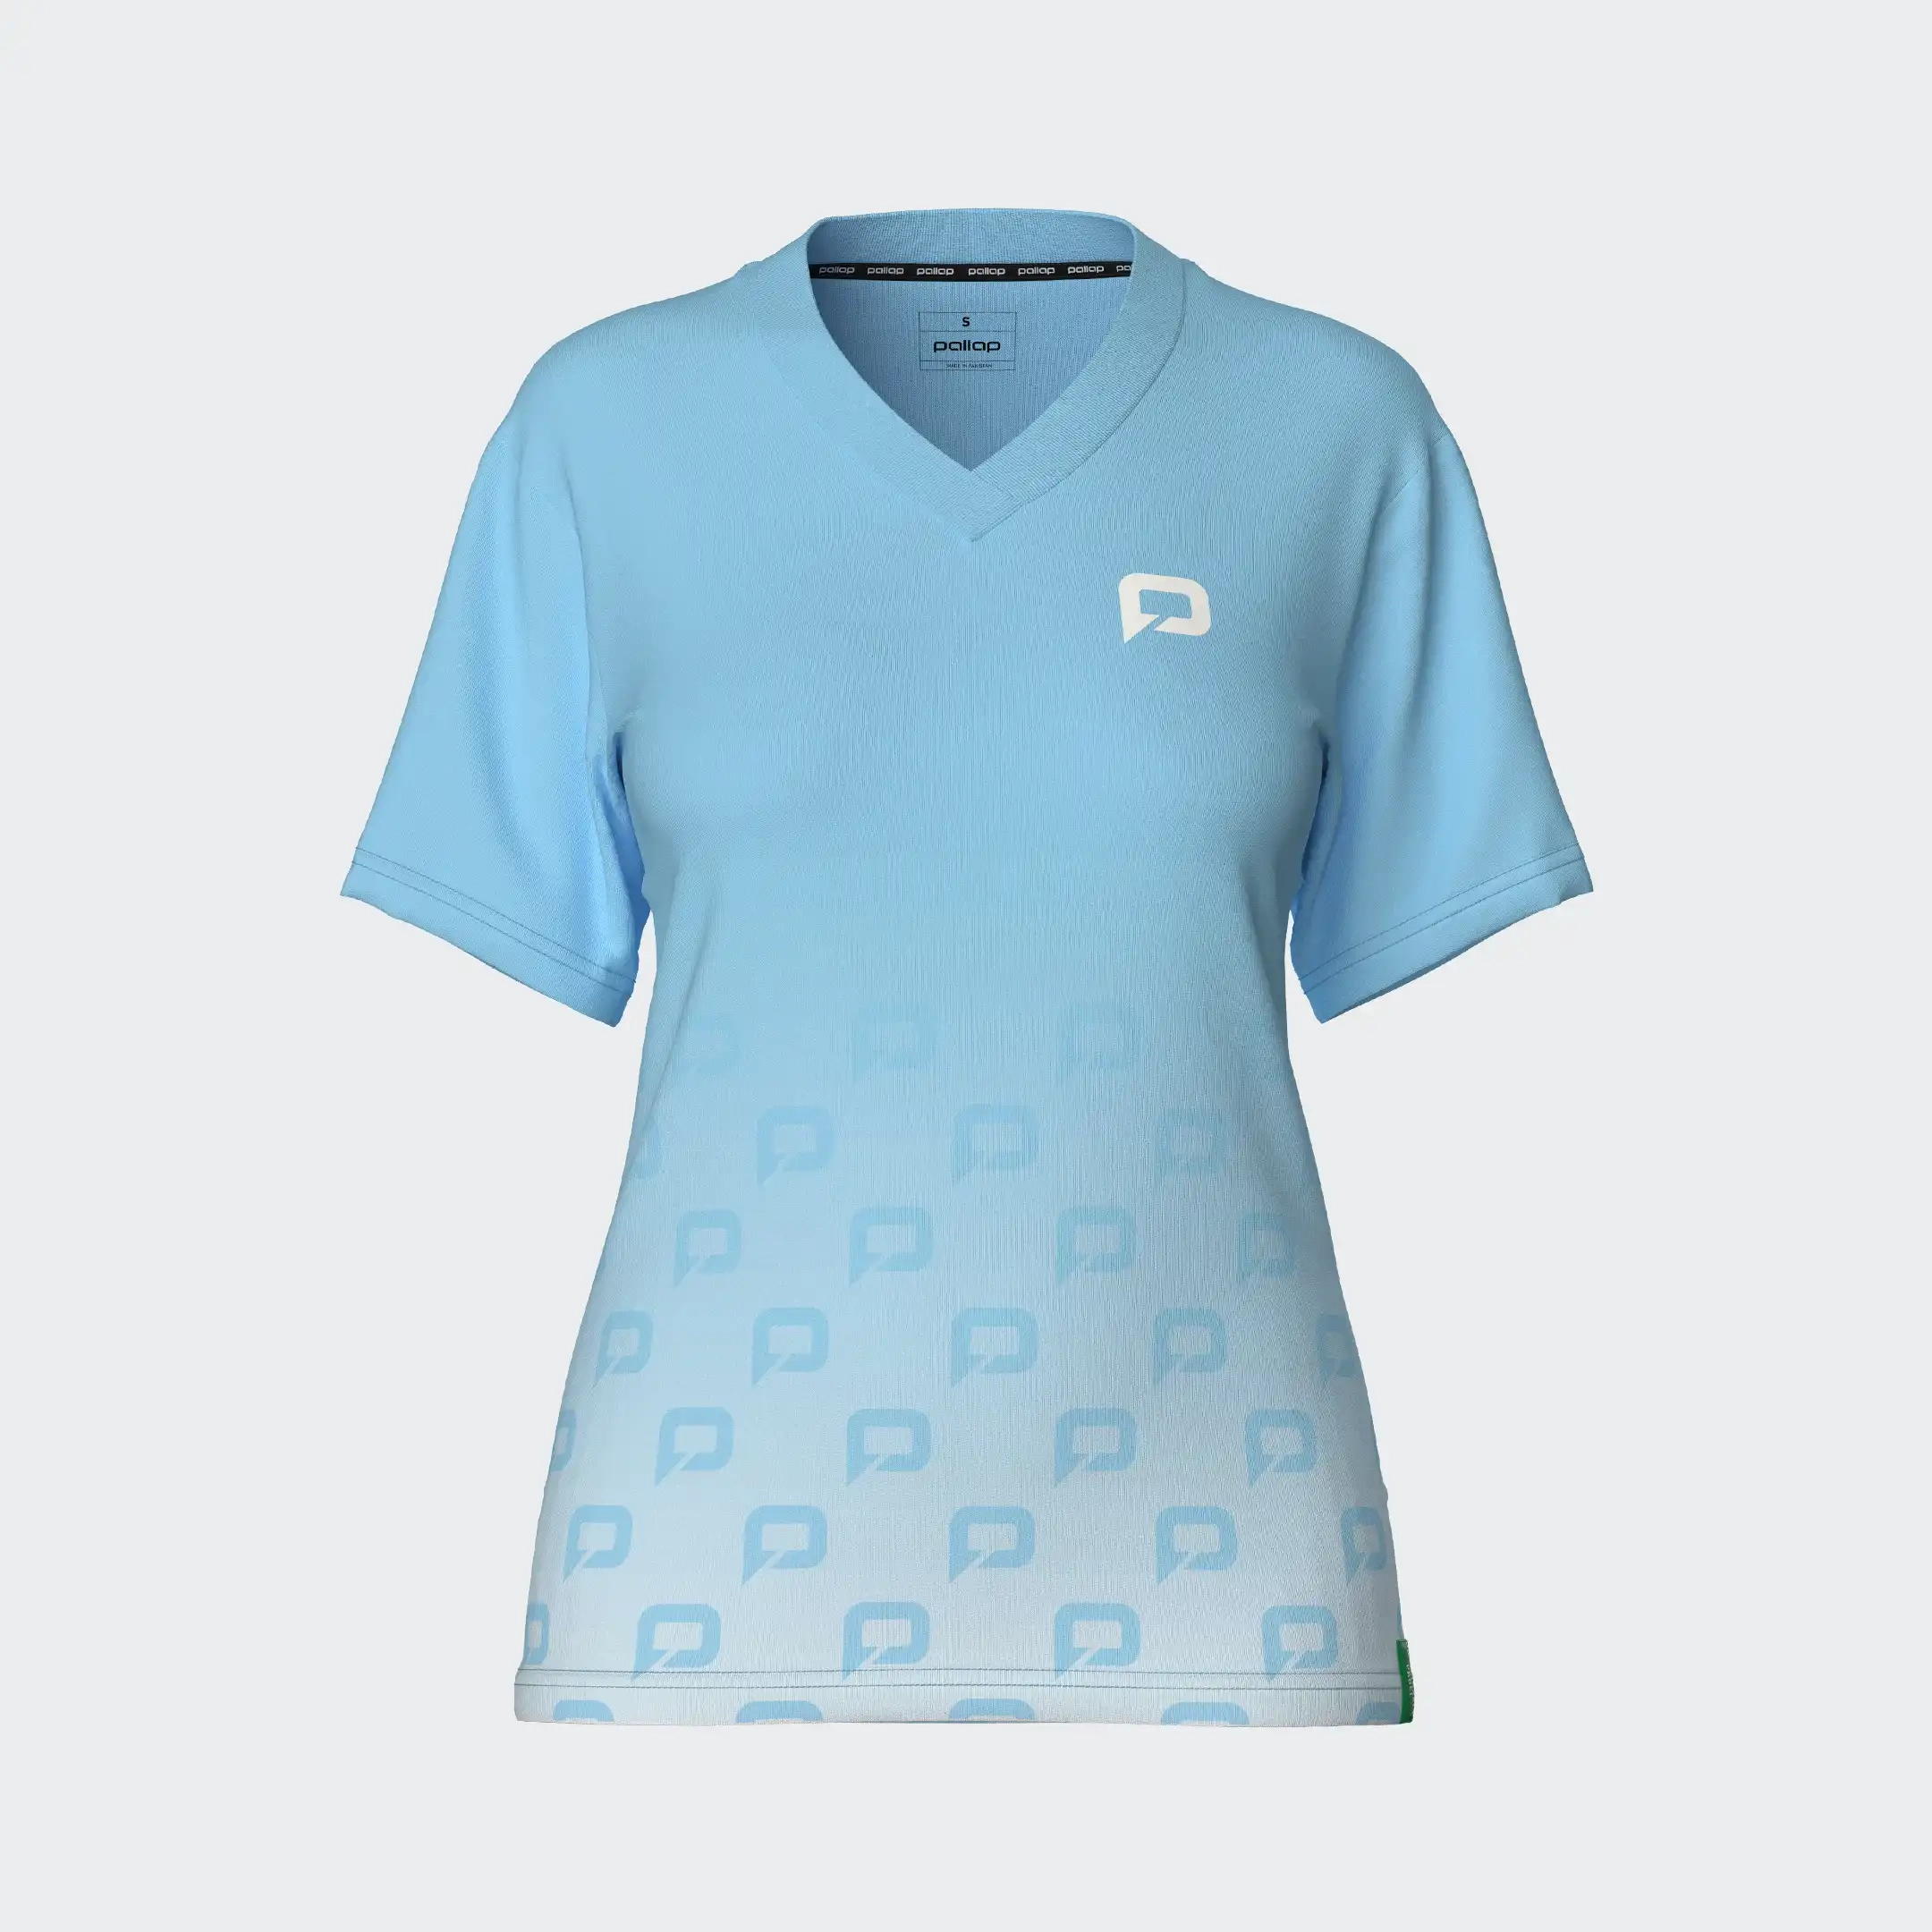 Pallap Women`s Competition pro Shirt pulse blue/white